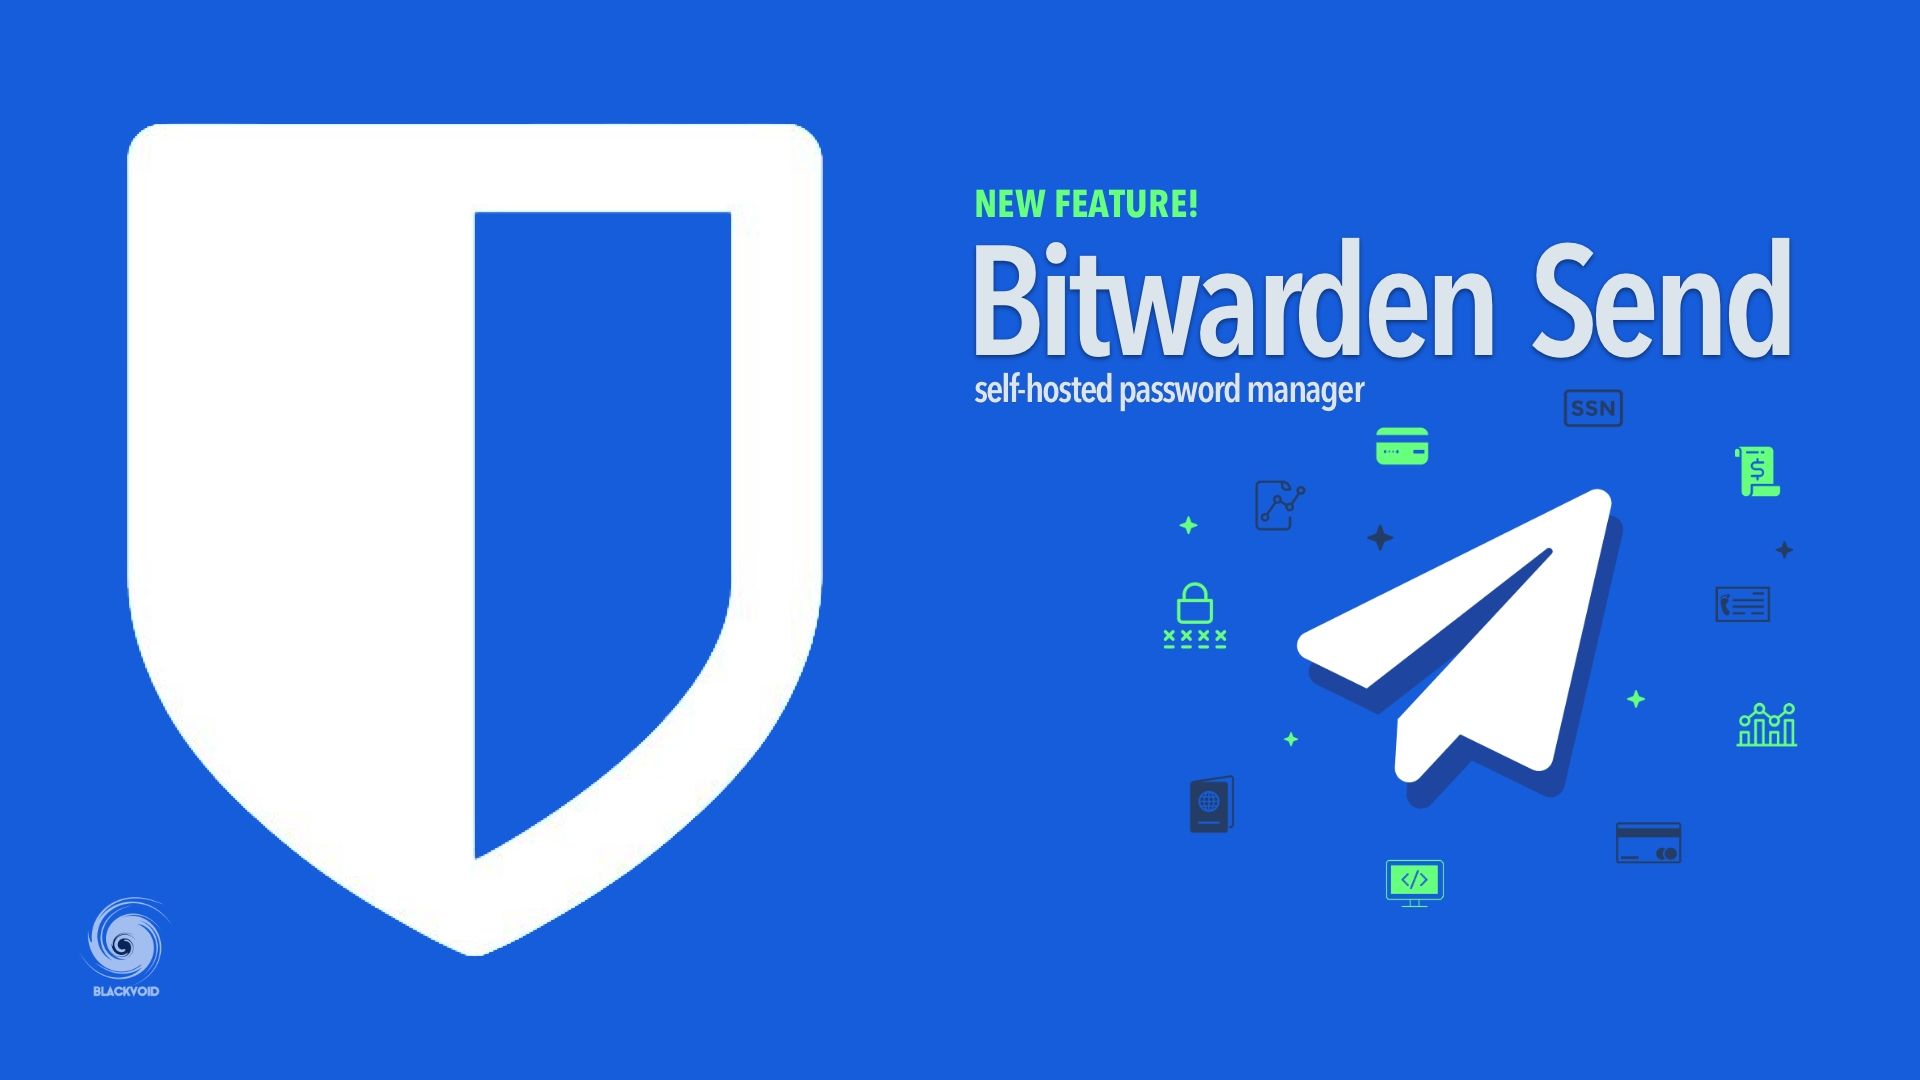 Bitwarden Send - NEW feature!